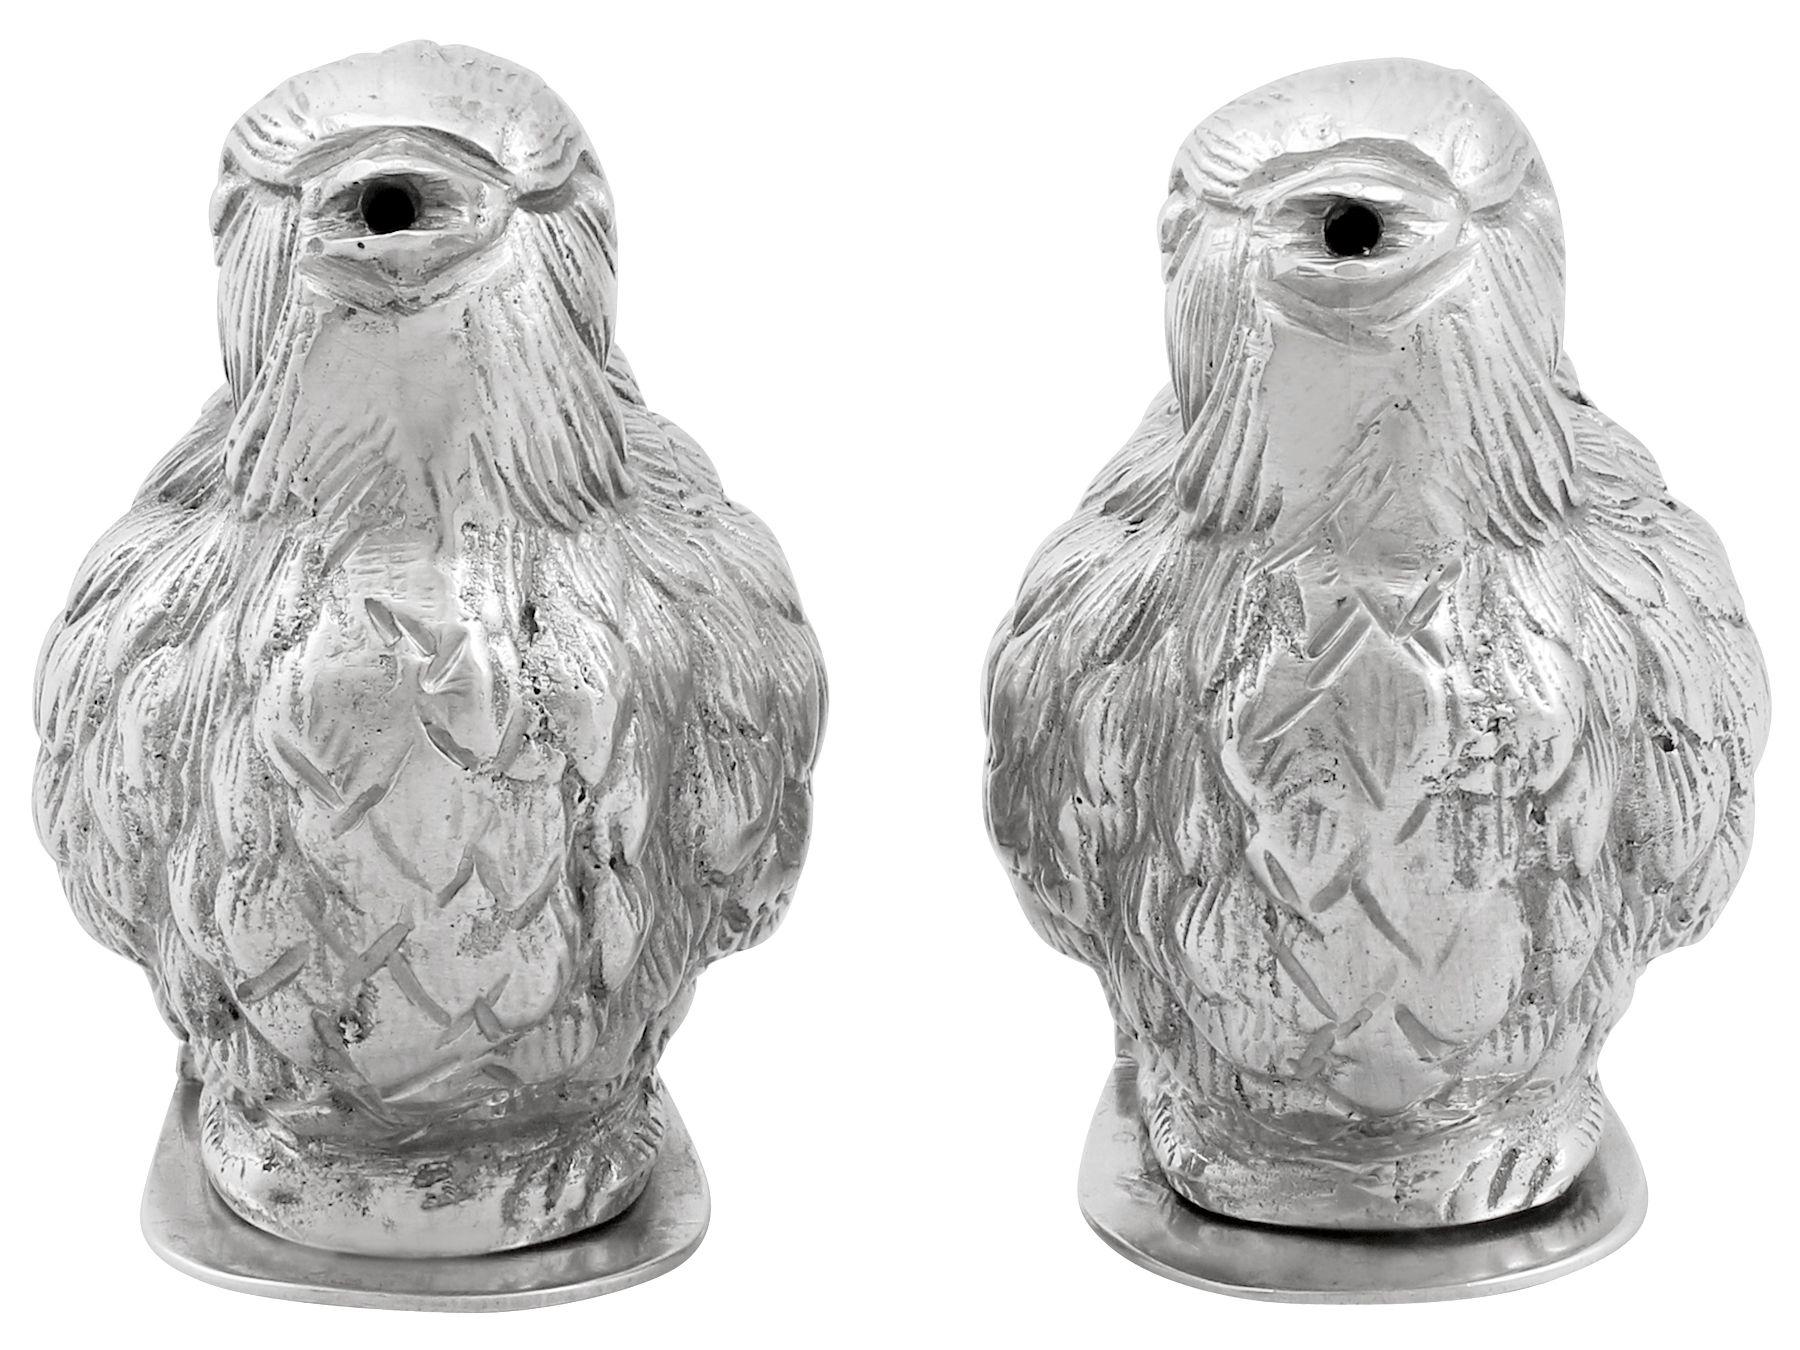 Ein außergewöhnliches, feines und beeindruckendes Paar antiker europäischer Silberpfeffer aus den 1920er Jahren; eine Ergänzung zu unserer Sammlung von Silberkännchen und -kondomen

Diese außergewöhnlichen, antiken, viktorianischen englischen